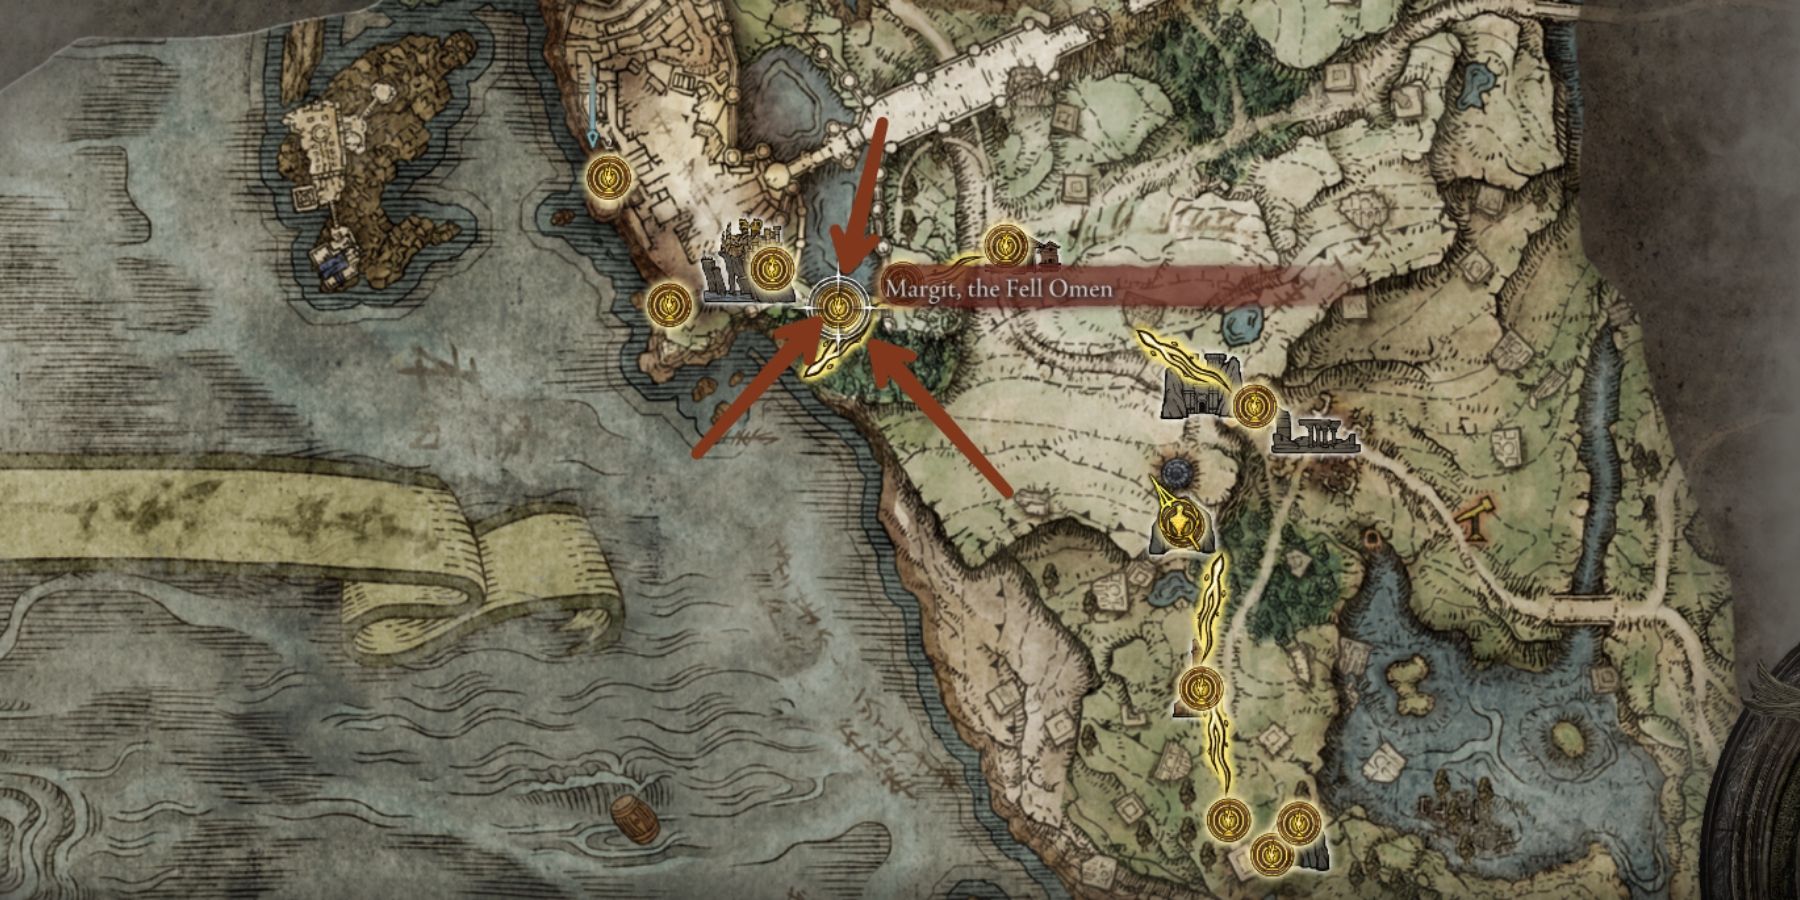 Margit the fell omen location on the map in elden ring